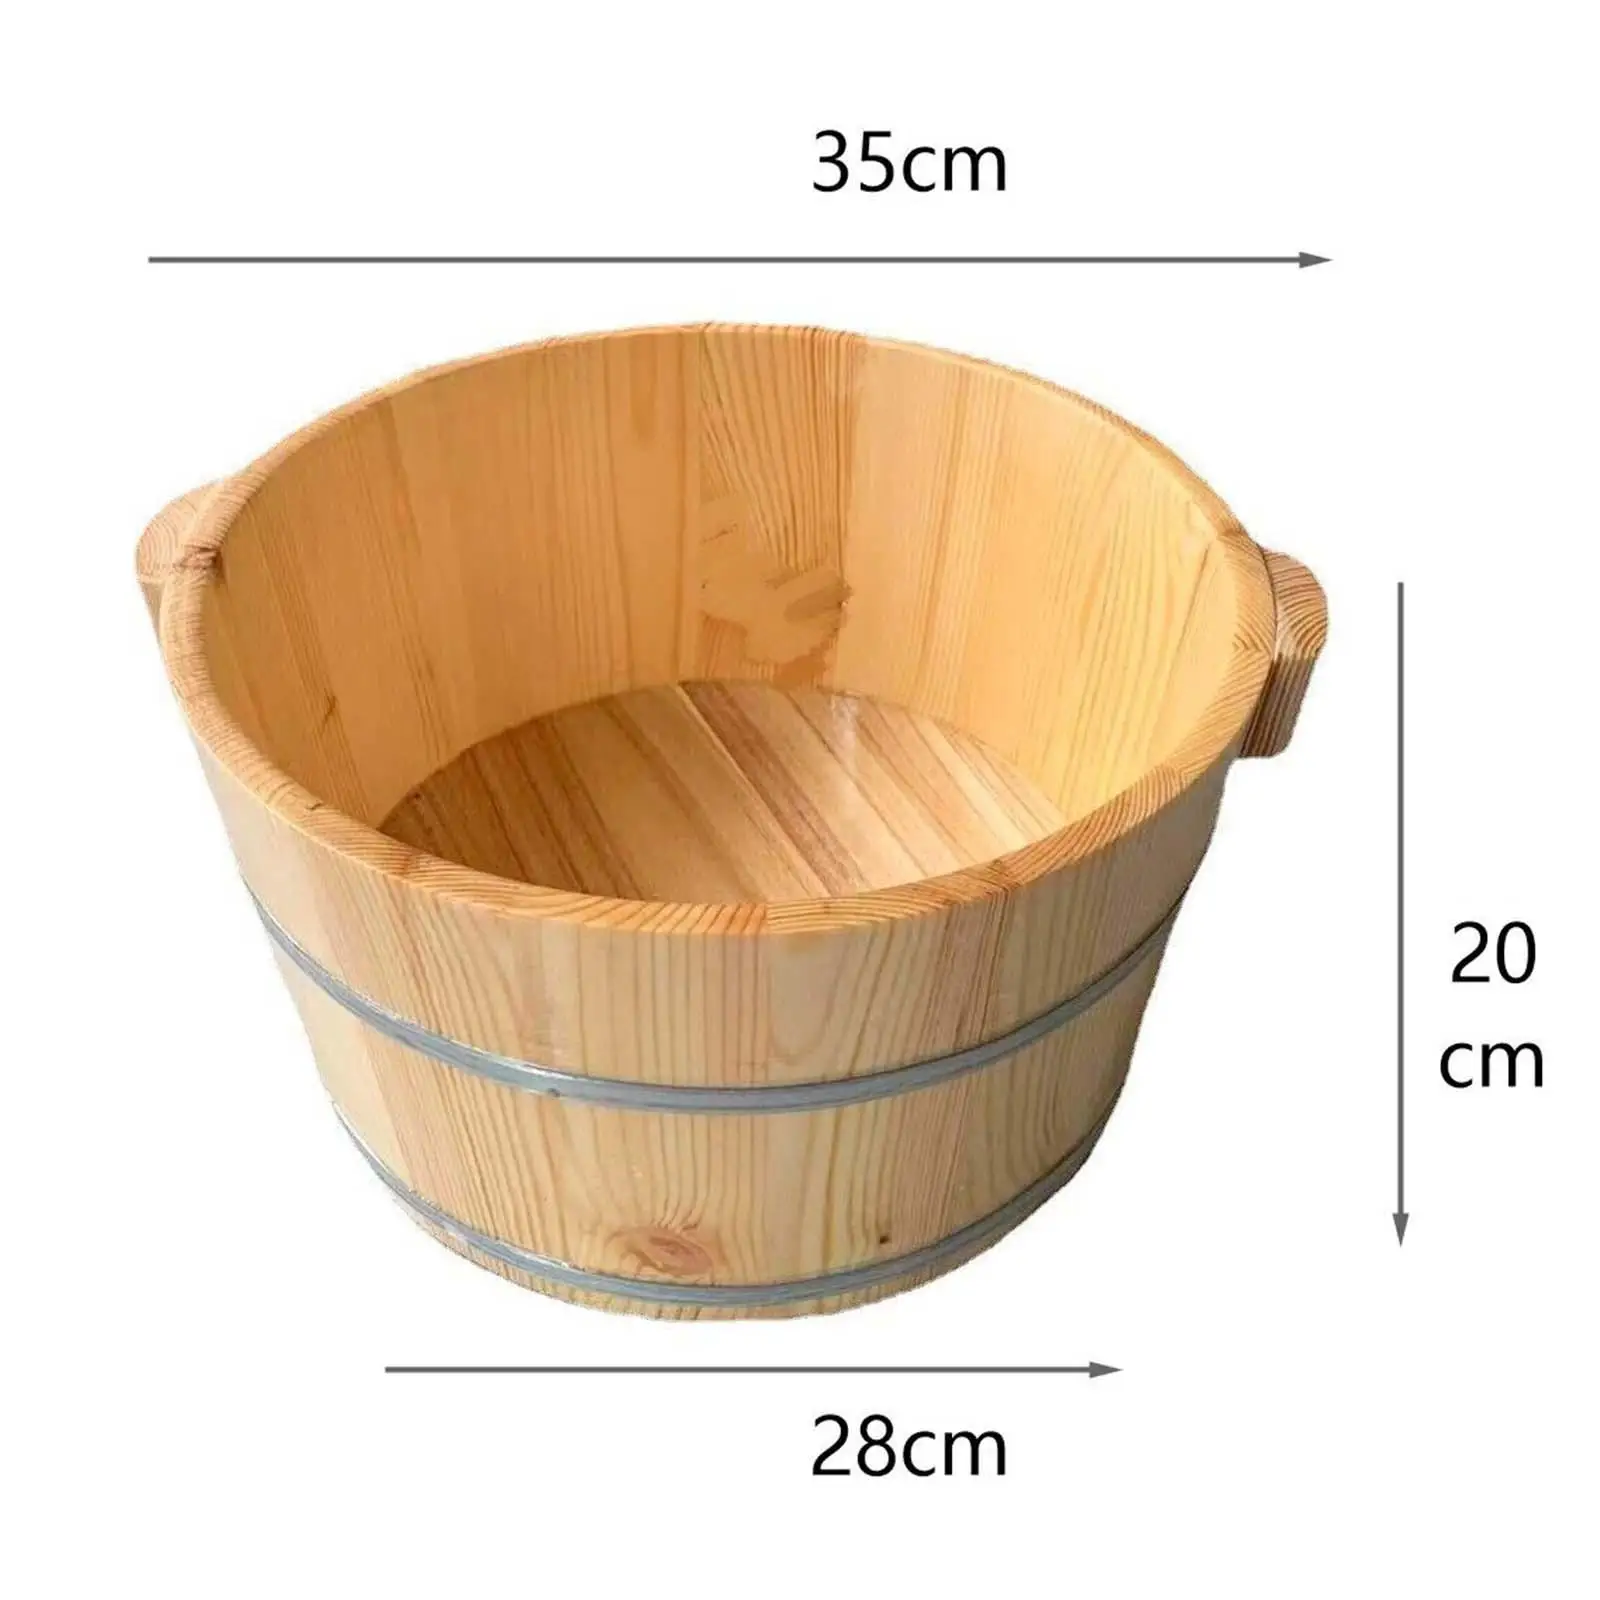 Wood Foot Footbath Bucket with Handle Home Foot SPA Wooden Foot Basin for Soaking Feet Sauna Bathroom Outdoor Women and Men Home